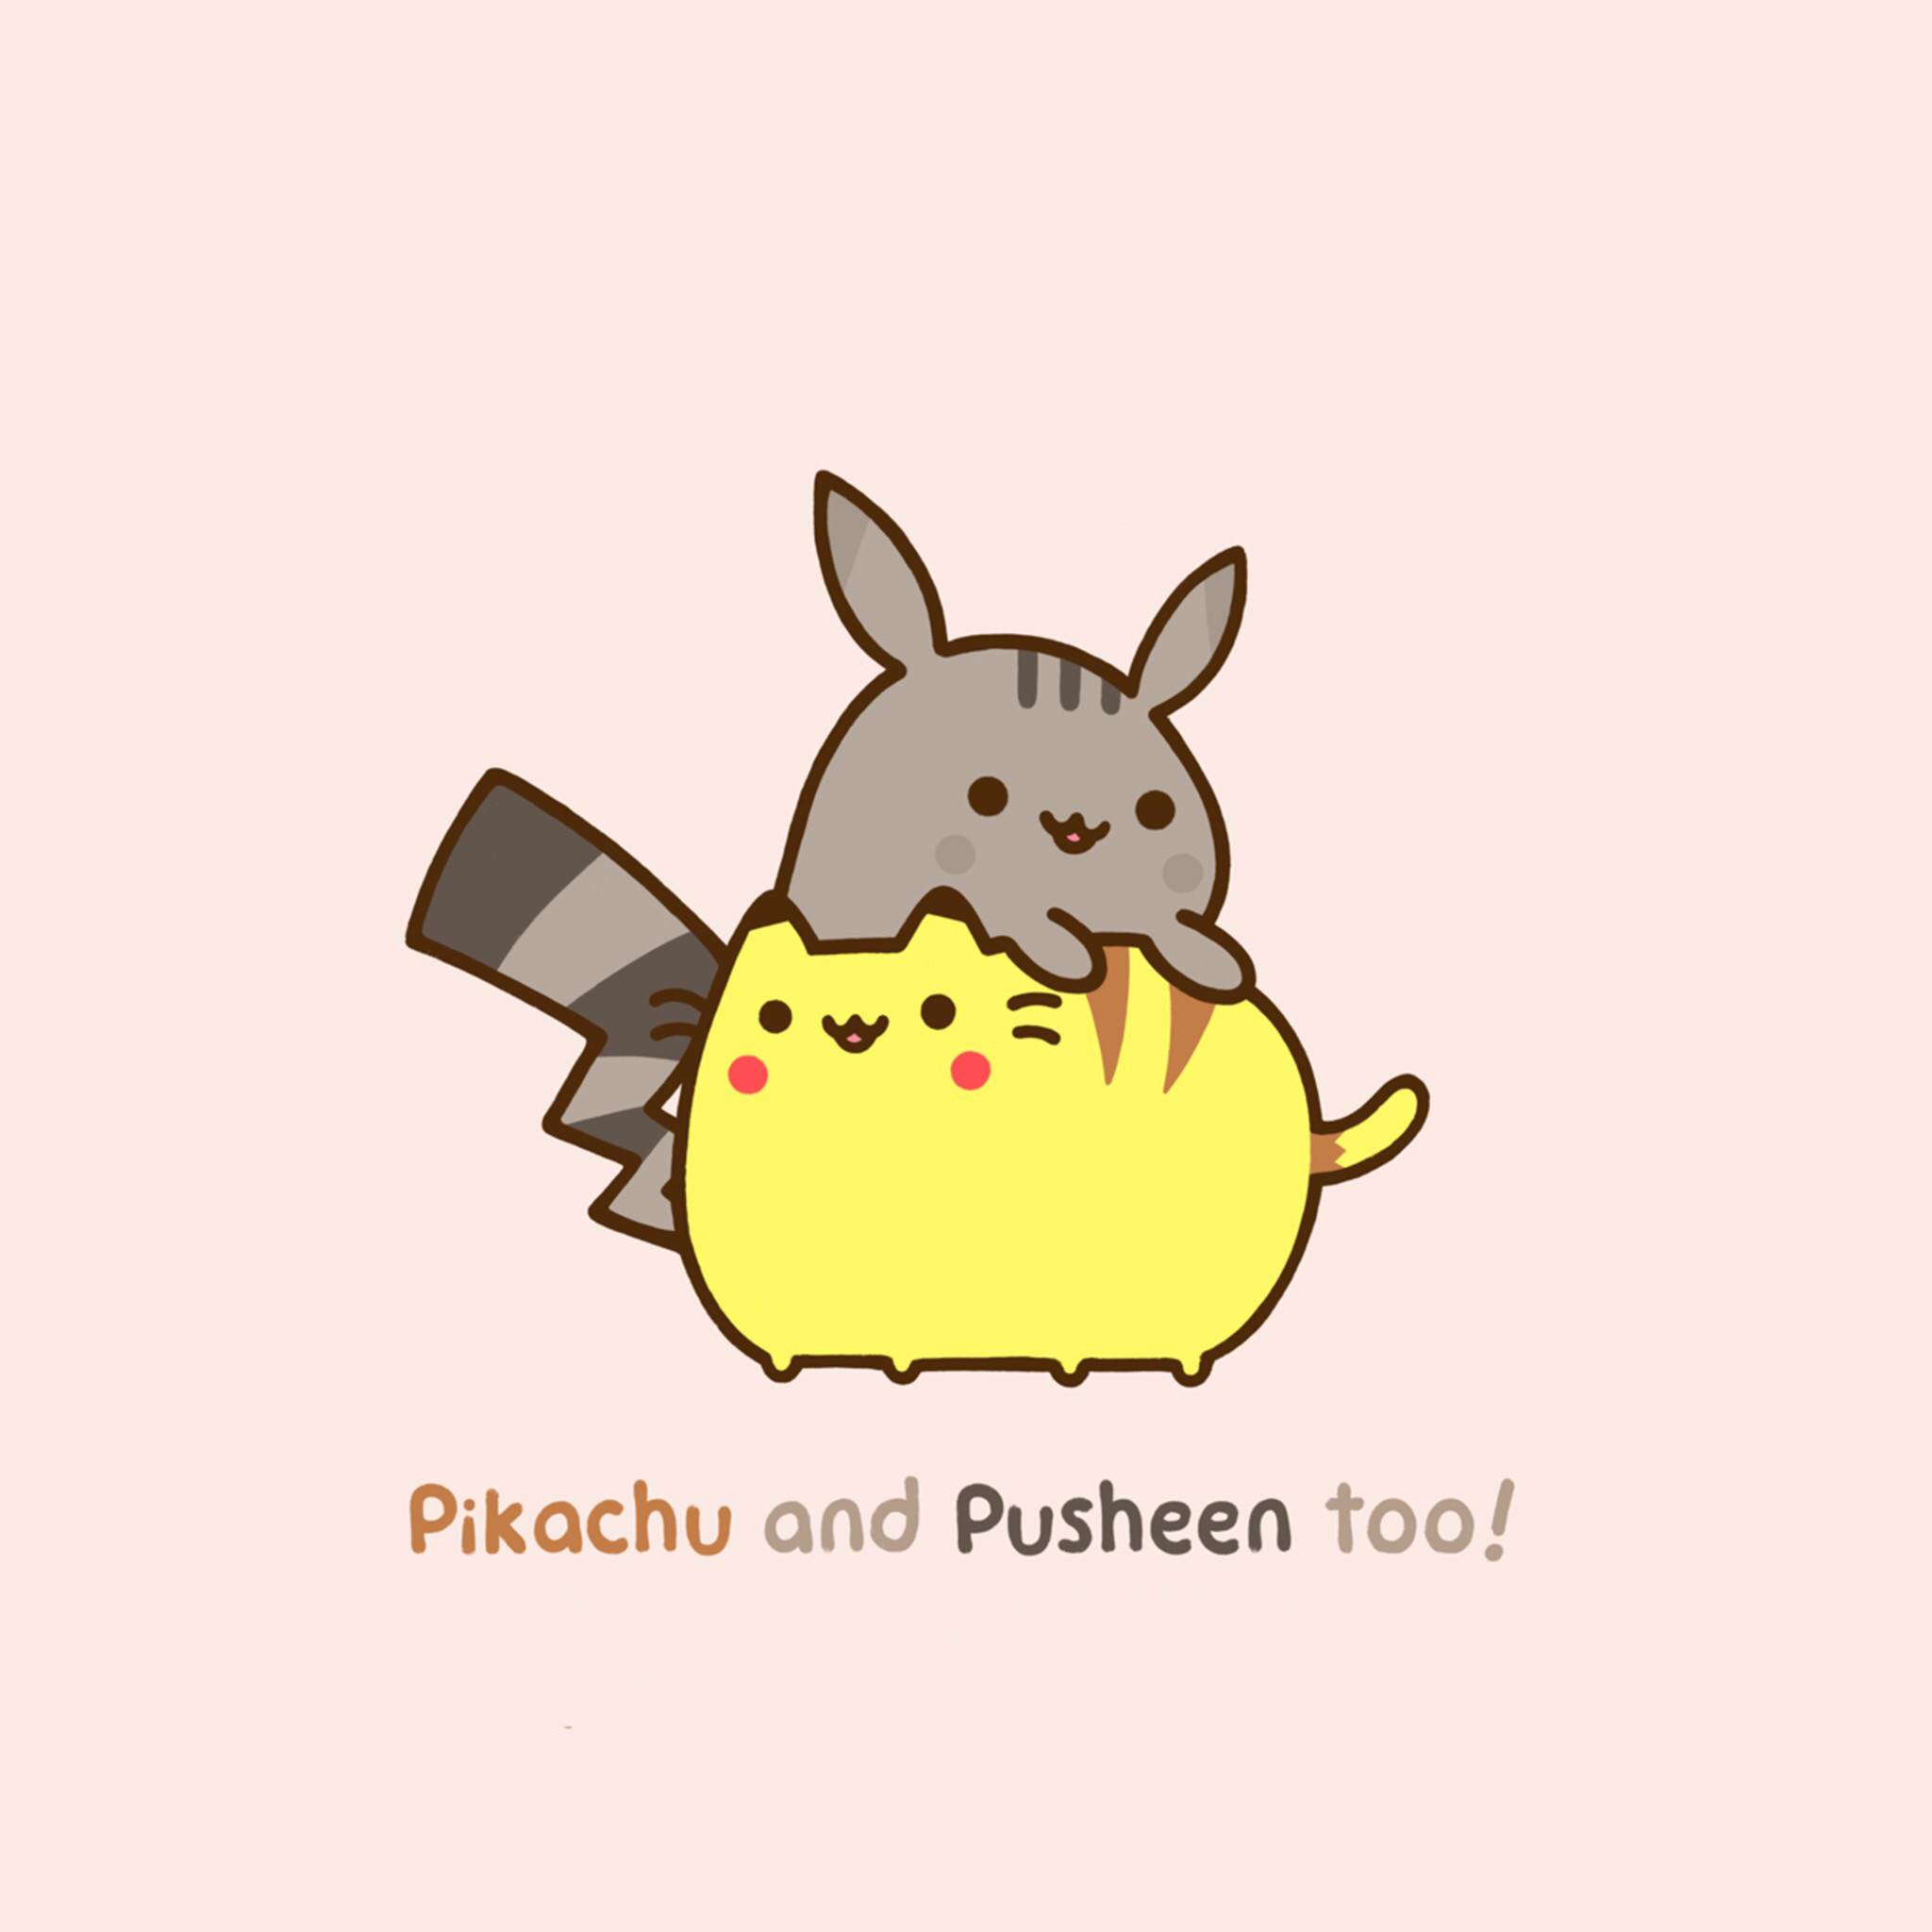 Pikachu and Pusheen xD 3